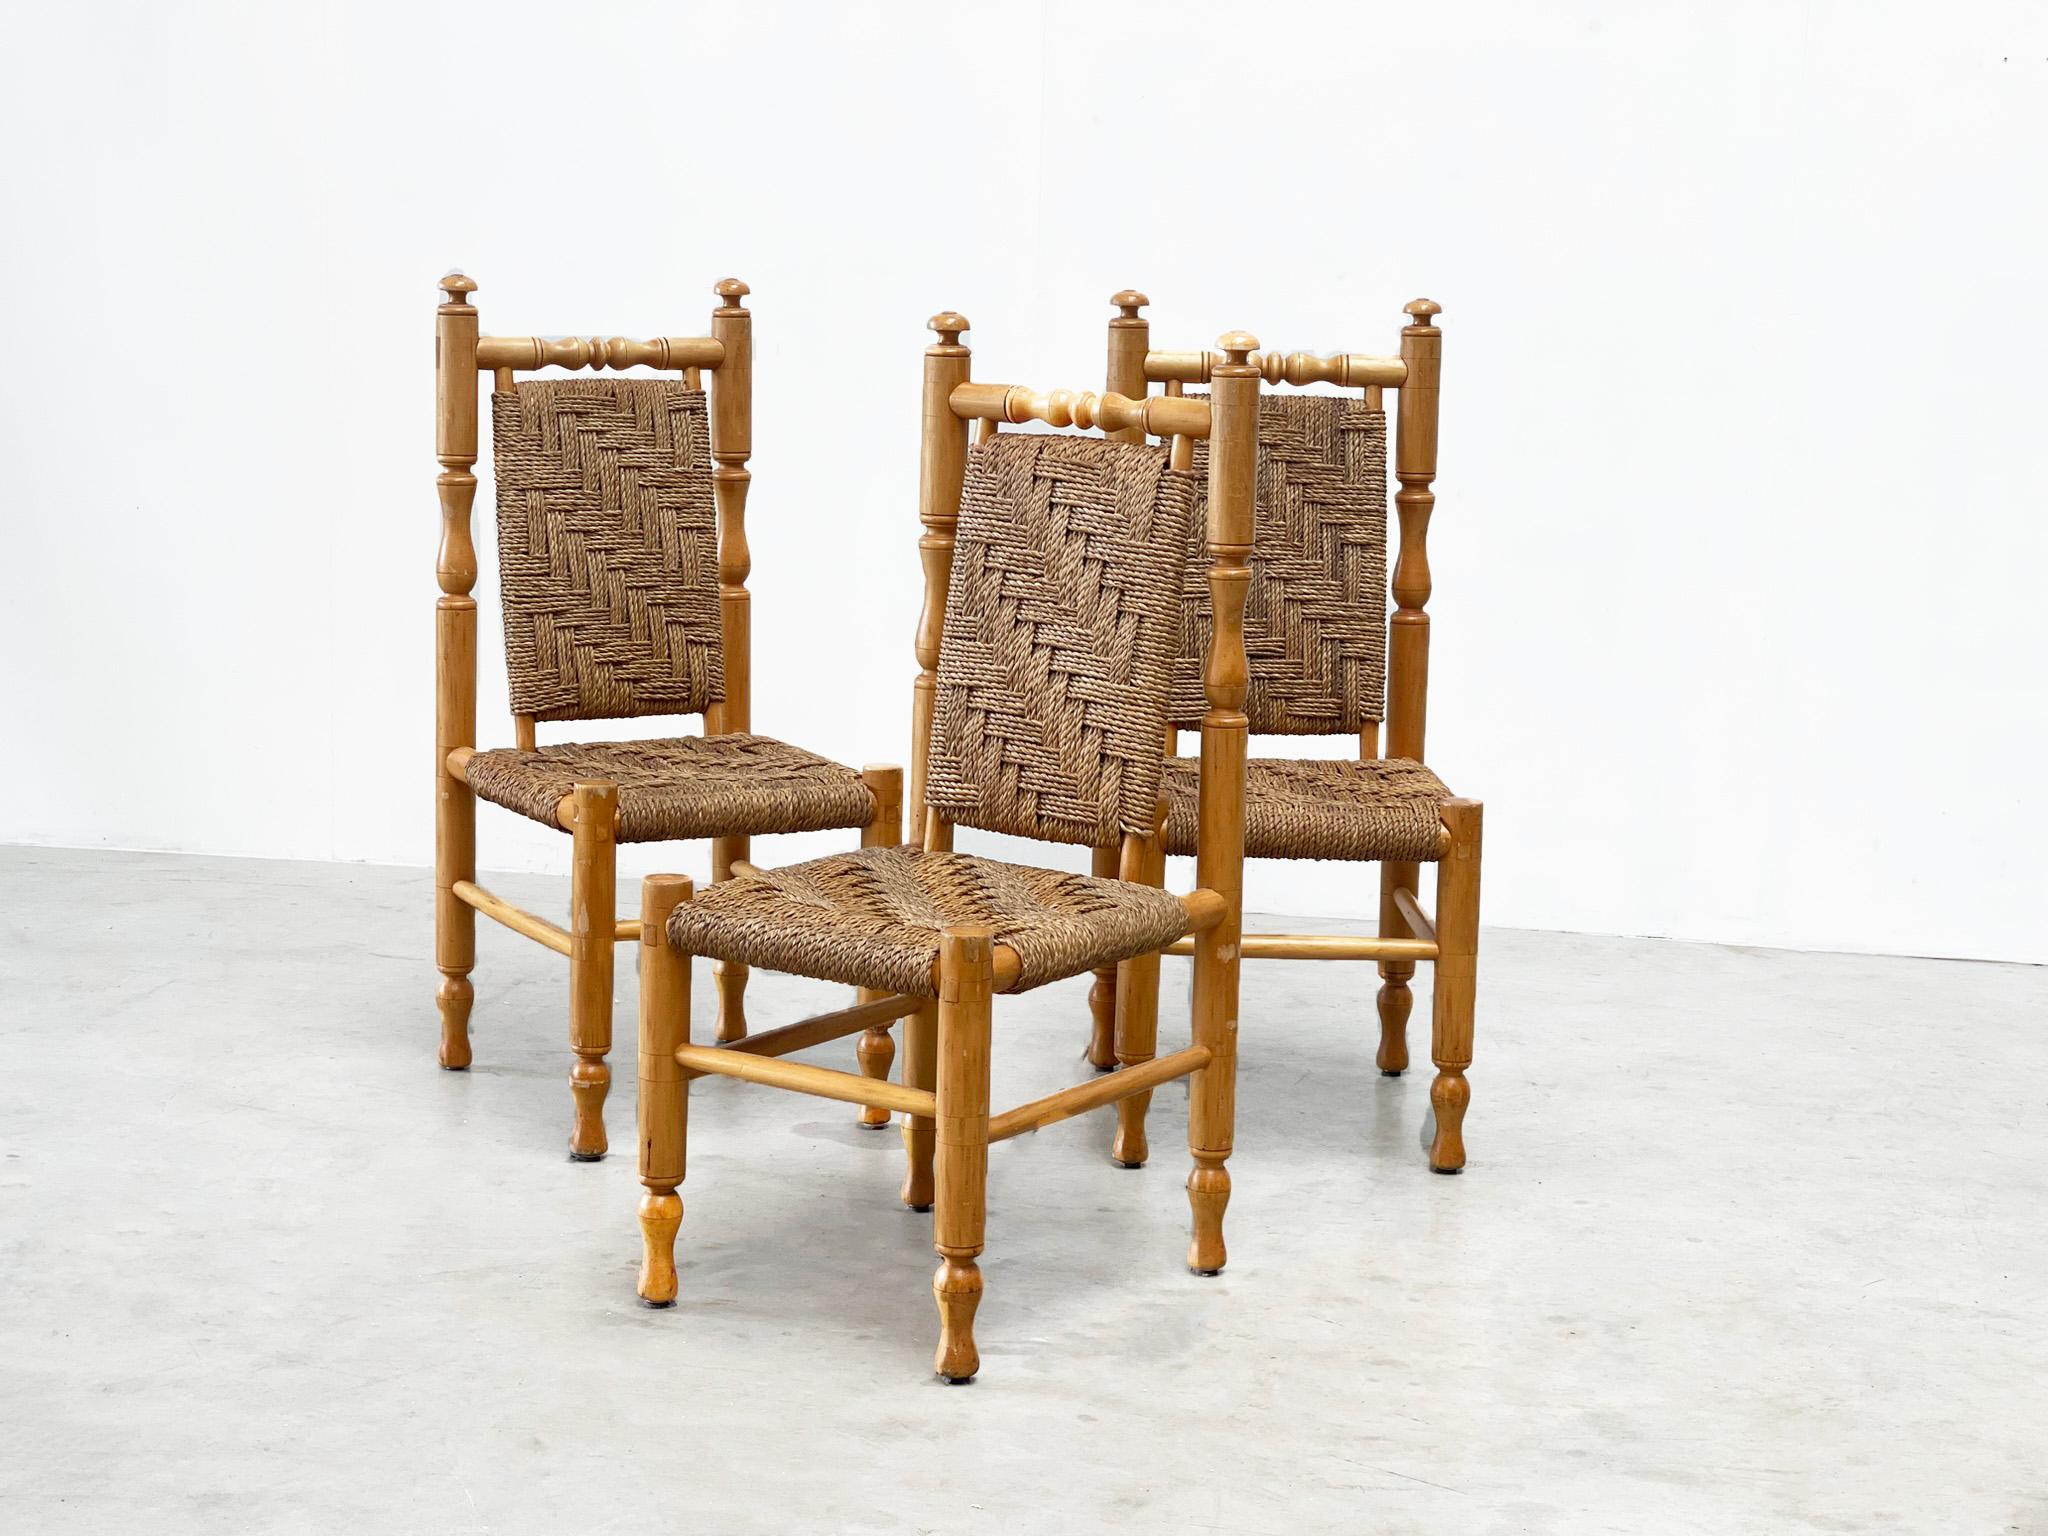 Ensemble de 3 fauteuils/chaises de salle à manger par Adrien Audoux & Frida Minet
Ces chaises sont l'œuvre des célèbres designers français Adrien Audoux & Frida Minet. Ils ont été conçus et fabriqués dans les années 1970. Les chaises ont été